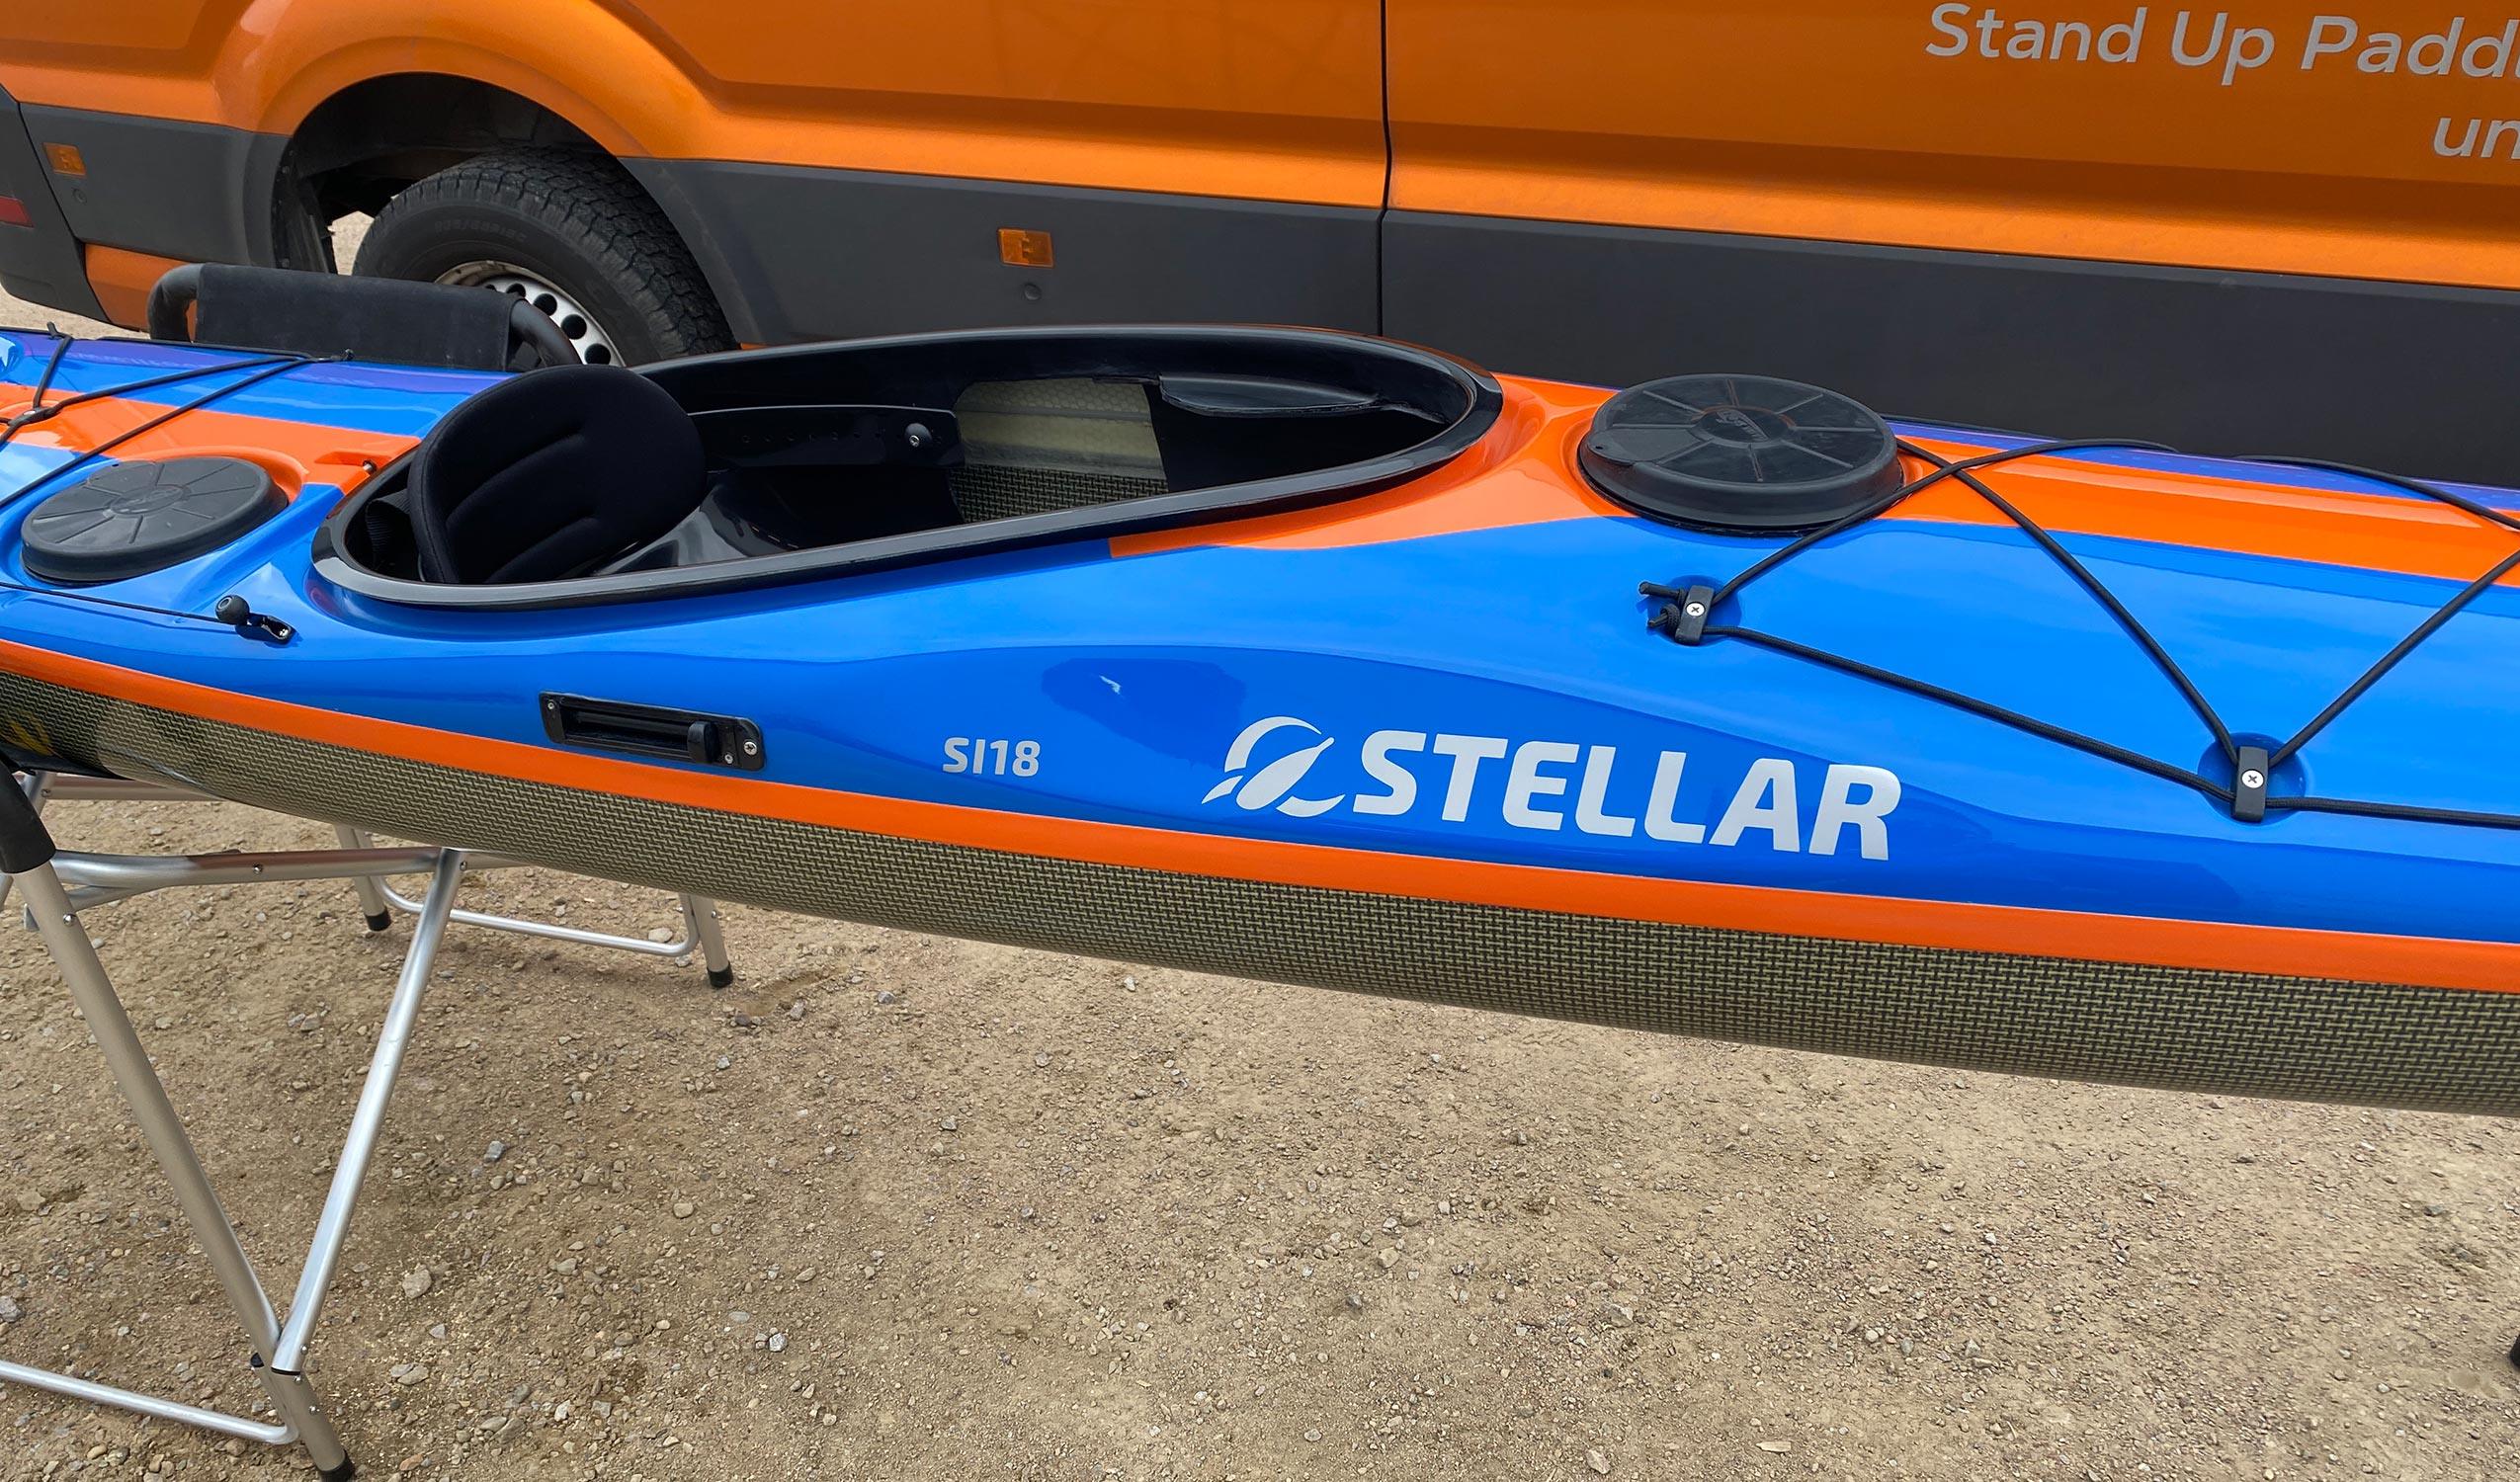 Produktbild von Kajak " SI18 Multisport-blau orange " der Marke STELLAR Lightweight für 3550.00 €. Erhältlich online bei Lite Venture ( www.liteventure.de )